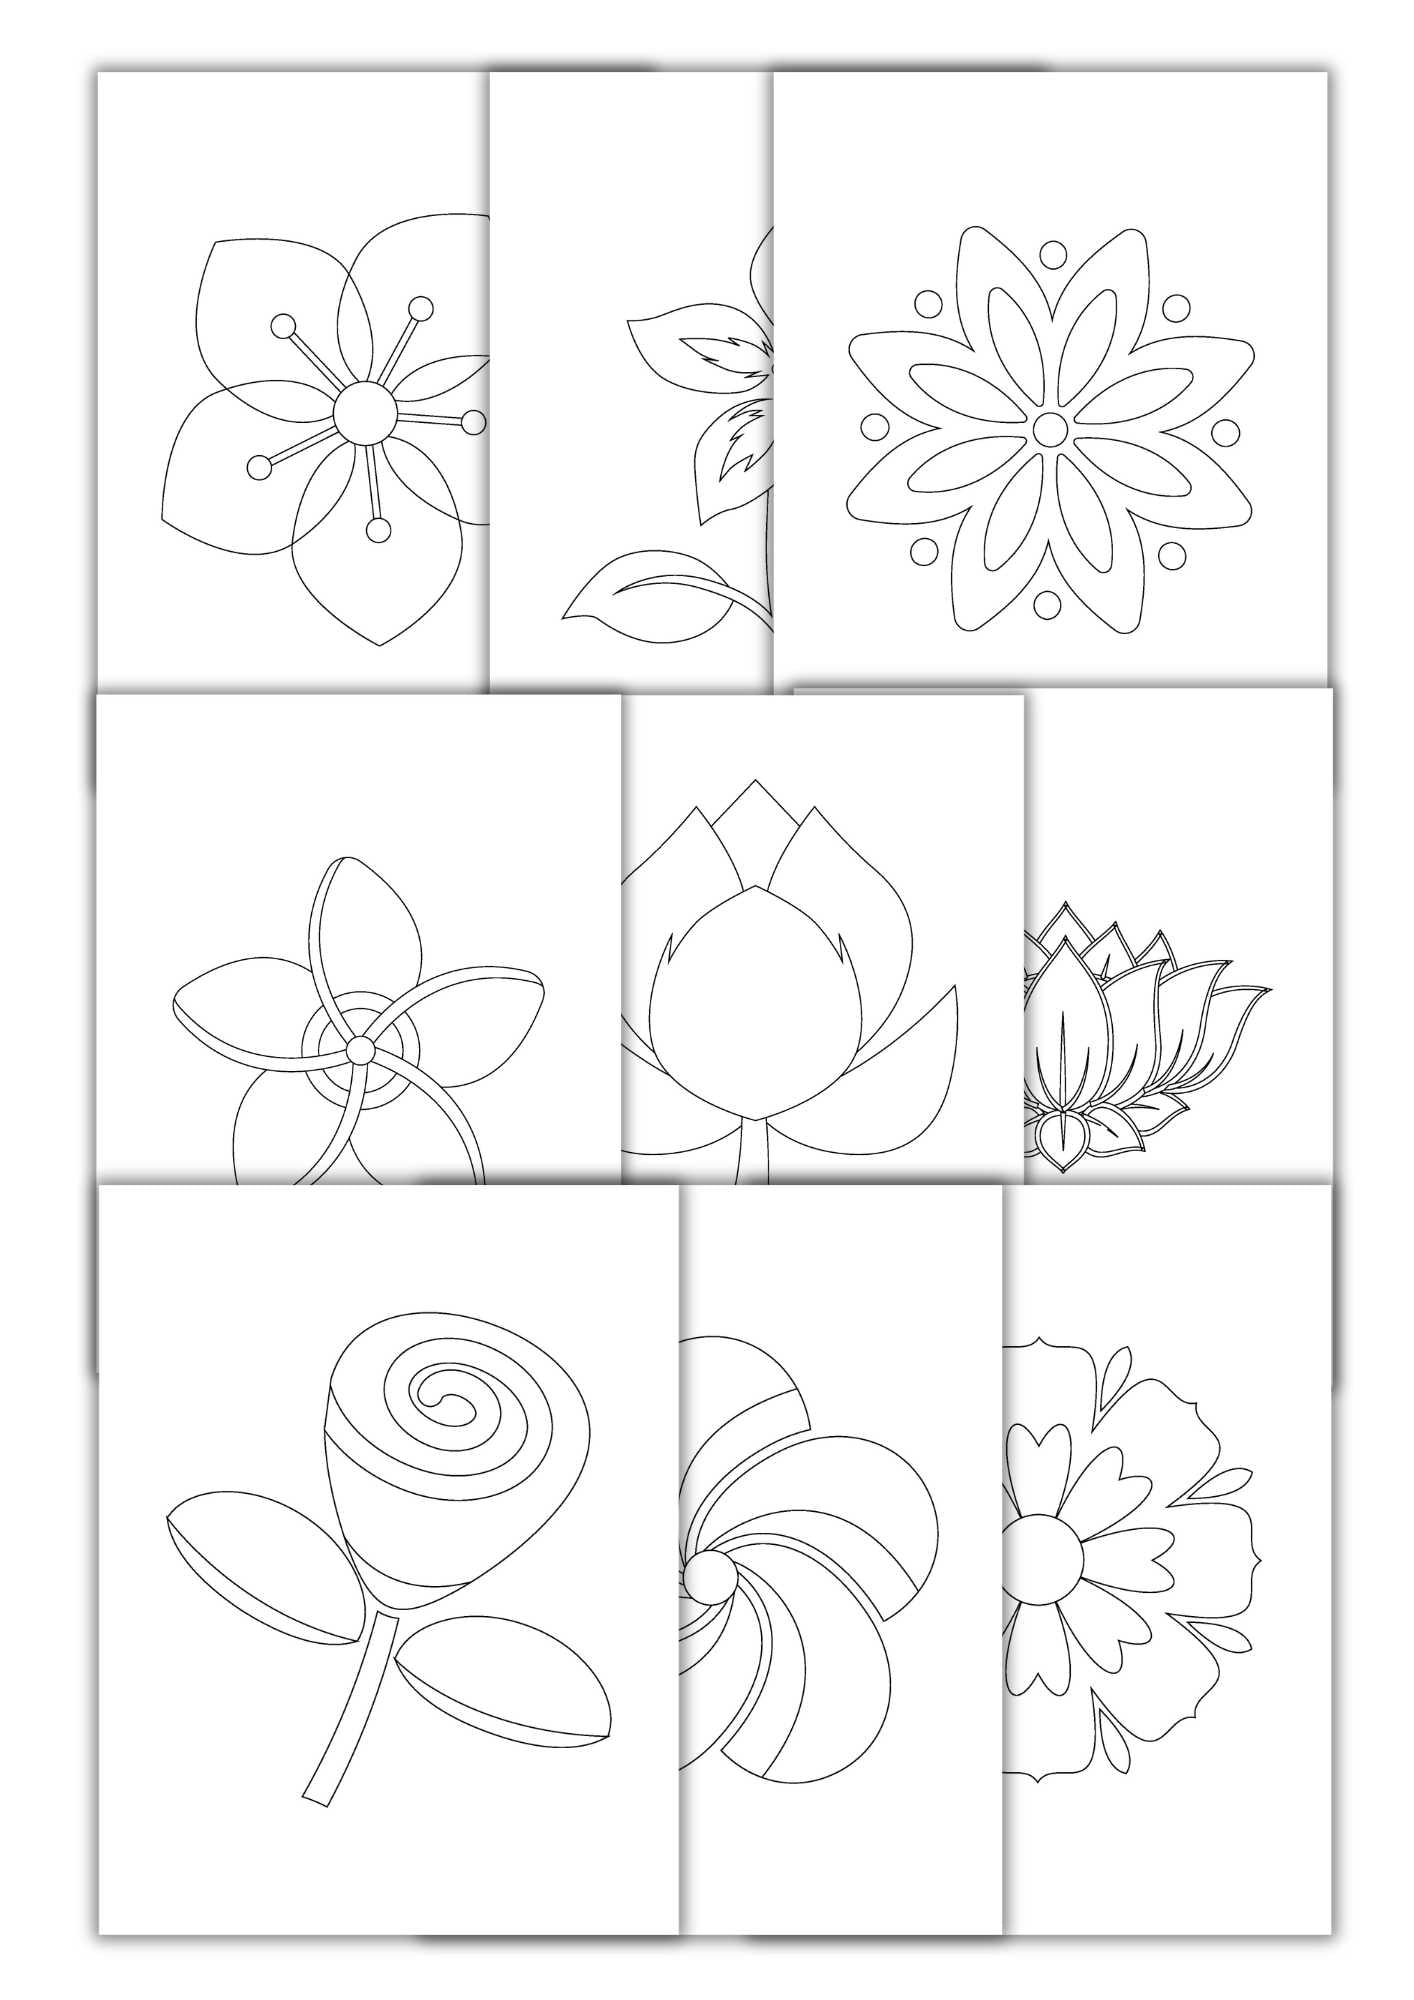 Blomsterlill fargeleggingsbok | 50 fargeleggingssider | PDF og PNG